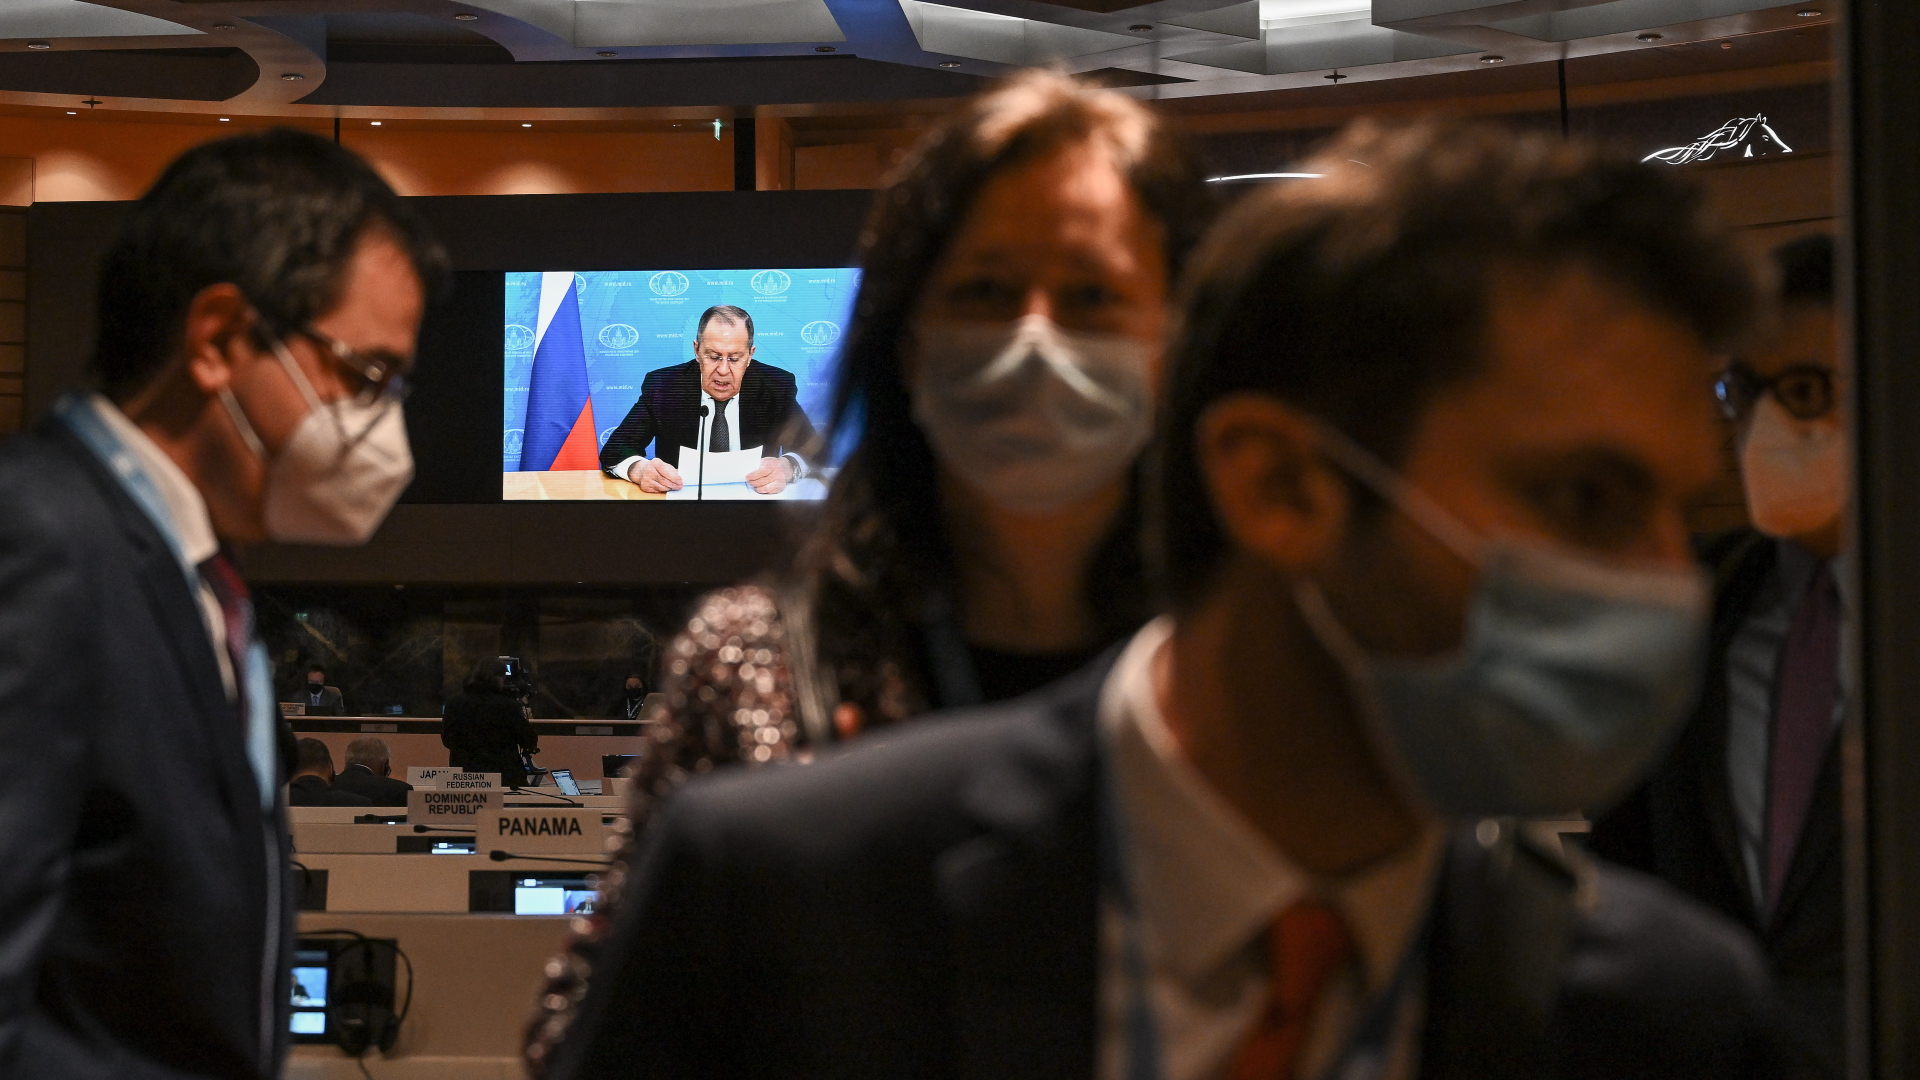 Botschafter und Diplomaten verlassen im März 2022 den Saal, während Sergej Lawrow (auf dem Bildschirm), Außenminister von Russland, mit einer aufgezeichneten Videobotschaft zur 49. Sitzung des UN-Menschenrechtsrats am europäischen Hauptsitz der Vereinten Nationen spricht.  | Bildquelle: dpa